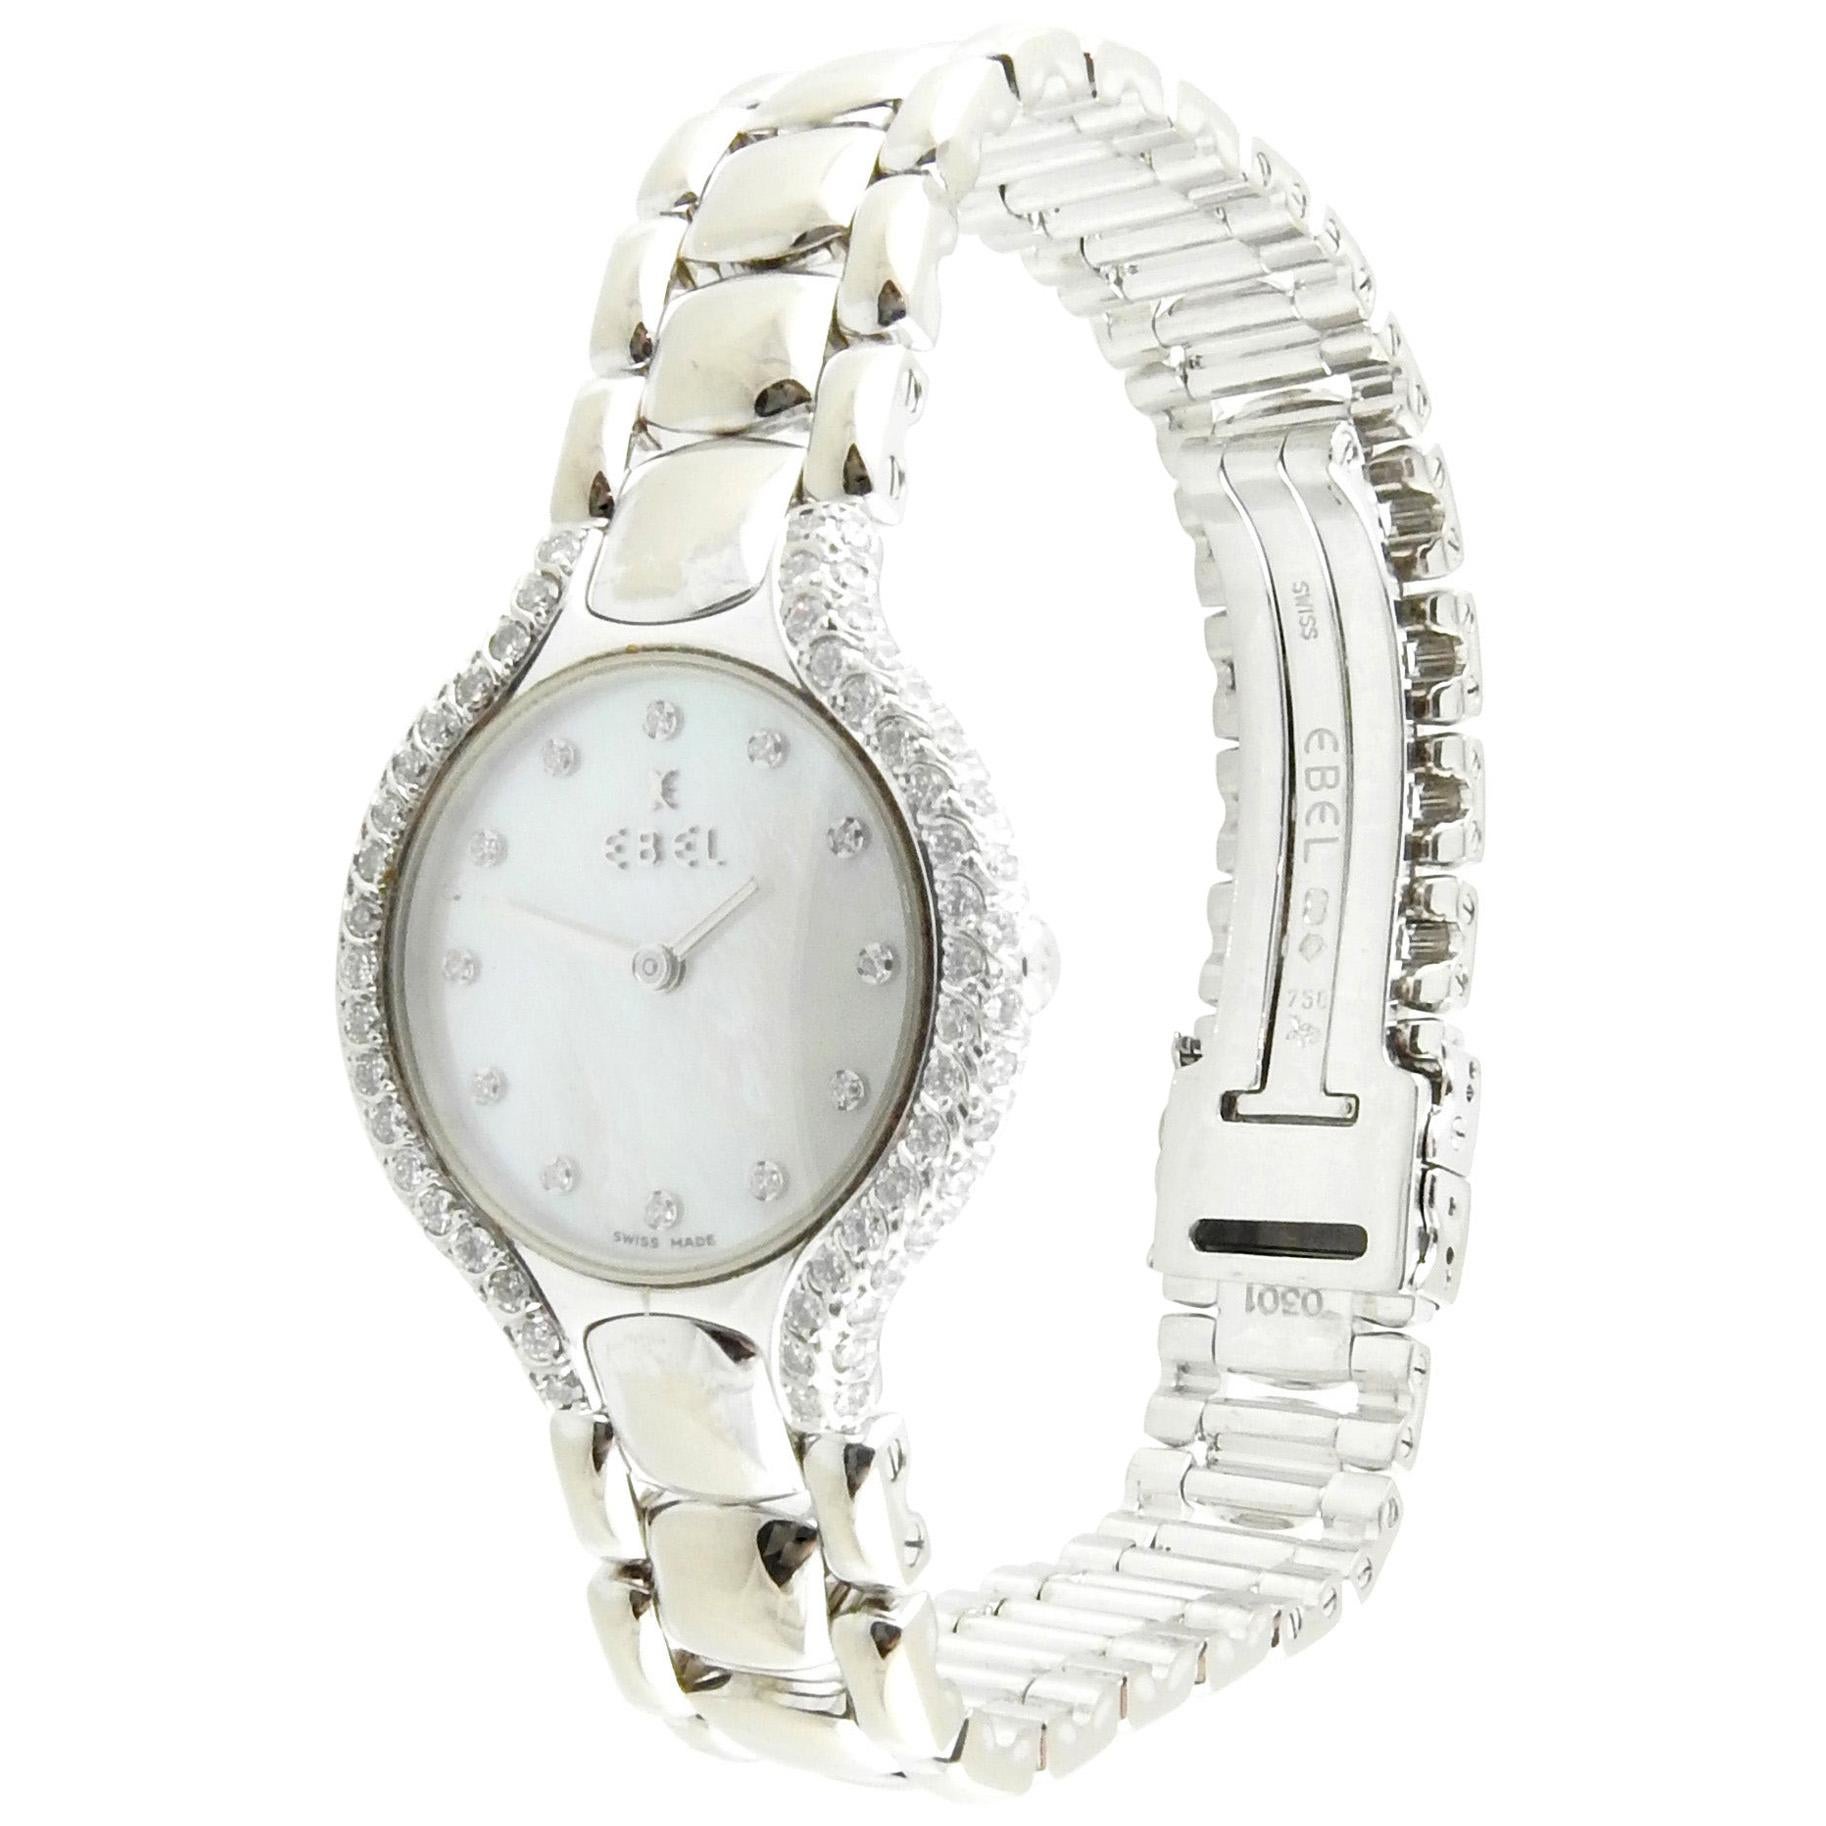 Ebel Beluga 18K White Gold Diamond Mother of Pearl Ladies Watch